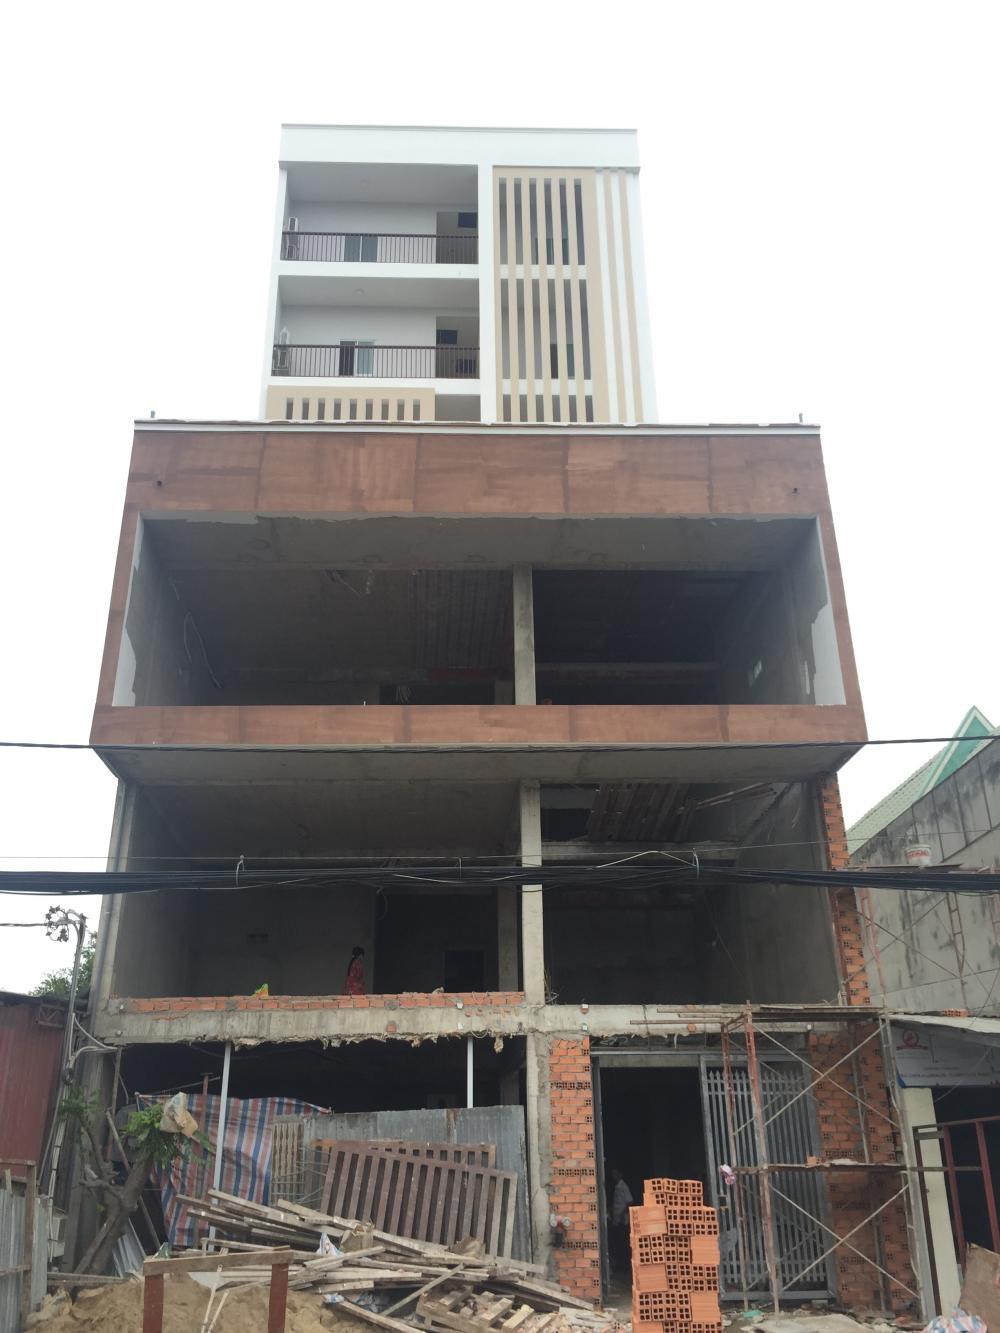 Phòng cho thuê nhà mới xây chưa qua sử dụng, gần đại học Tôn Đức Thắng, giá từ 3tr5/th